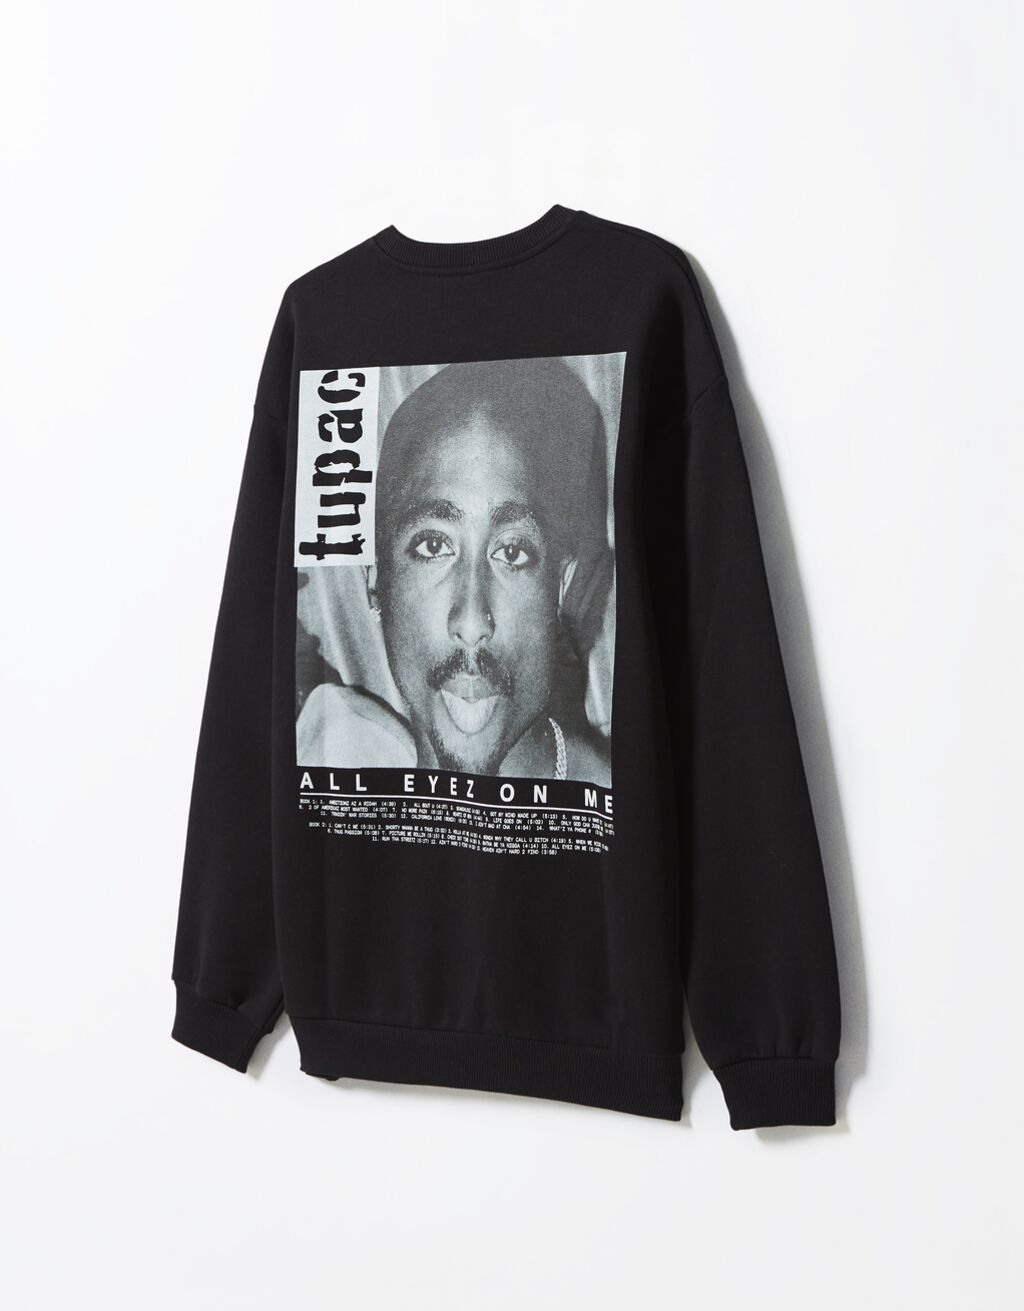 Tupac round neck sweatshirt